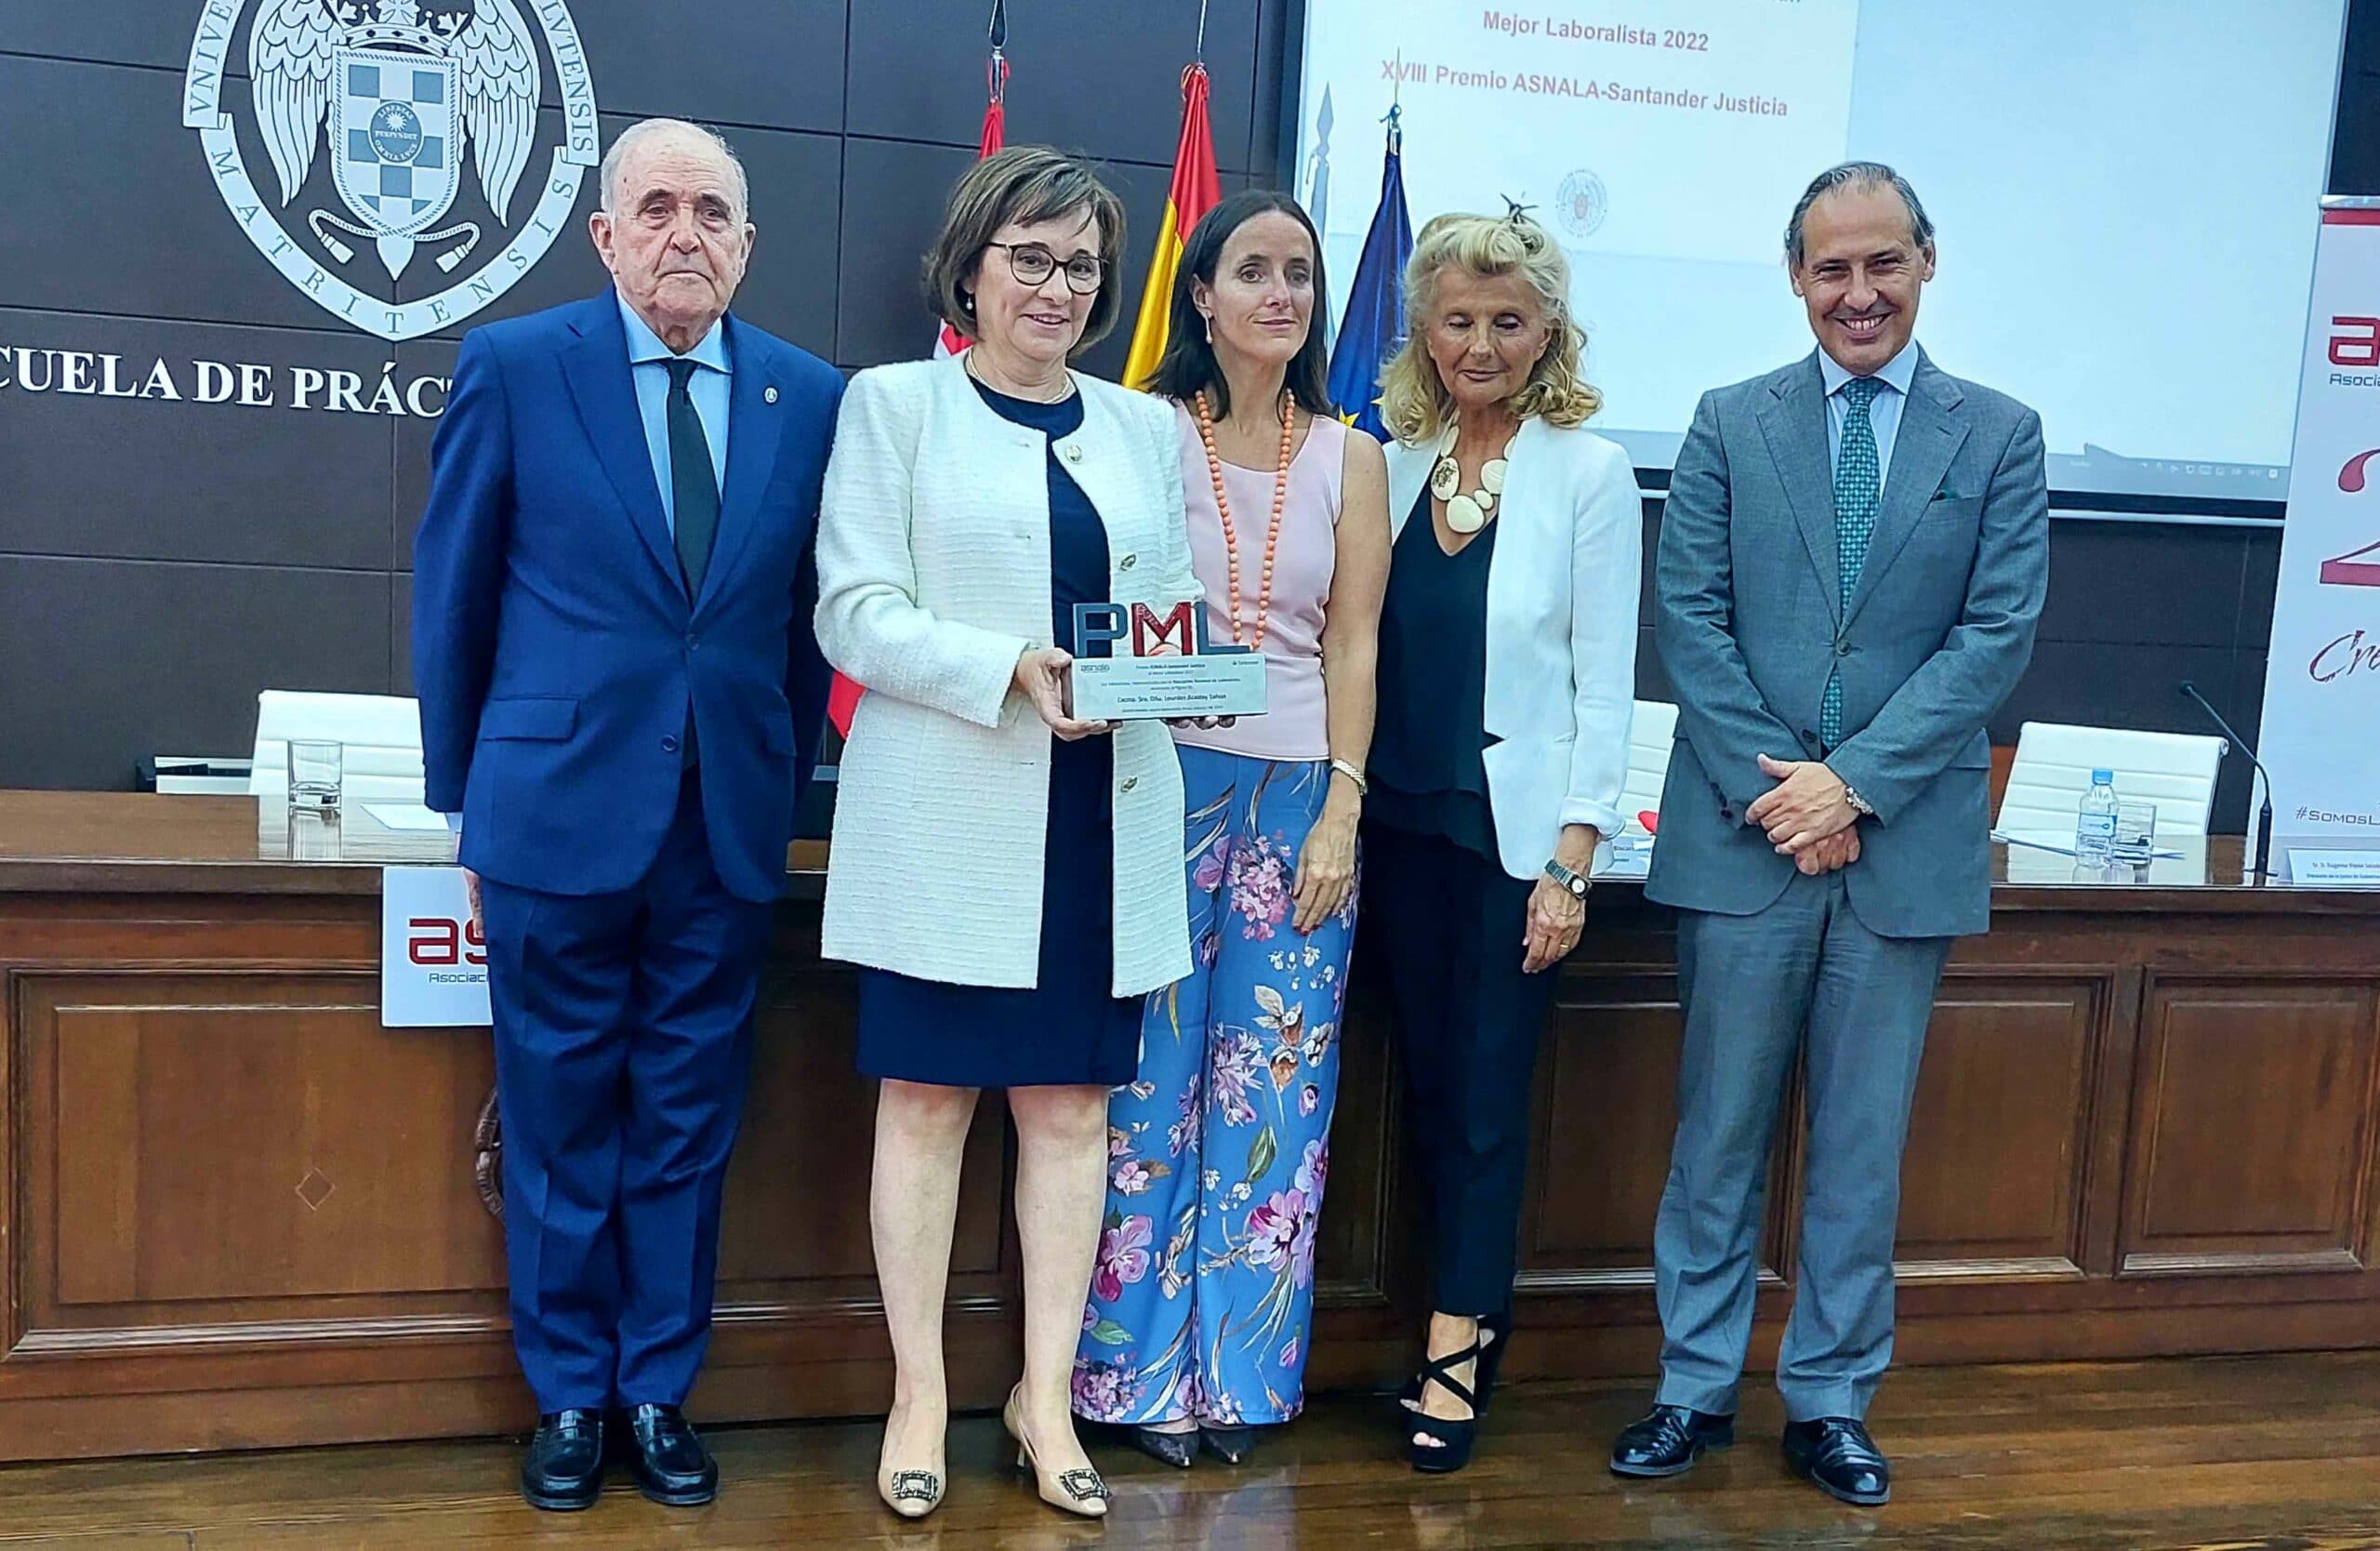 La juez española del TJUE, Lourdes Arastey, Premio Asnala Santander Justicia, destaca el papel de los jueces como garantes del Estado de Derecho